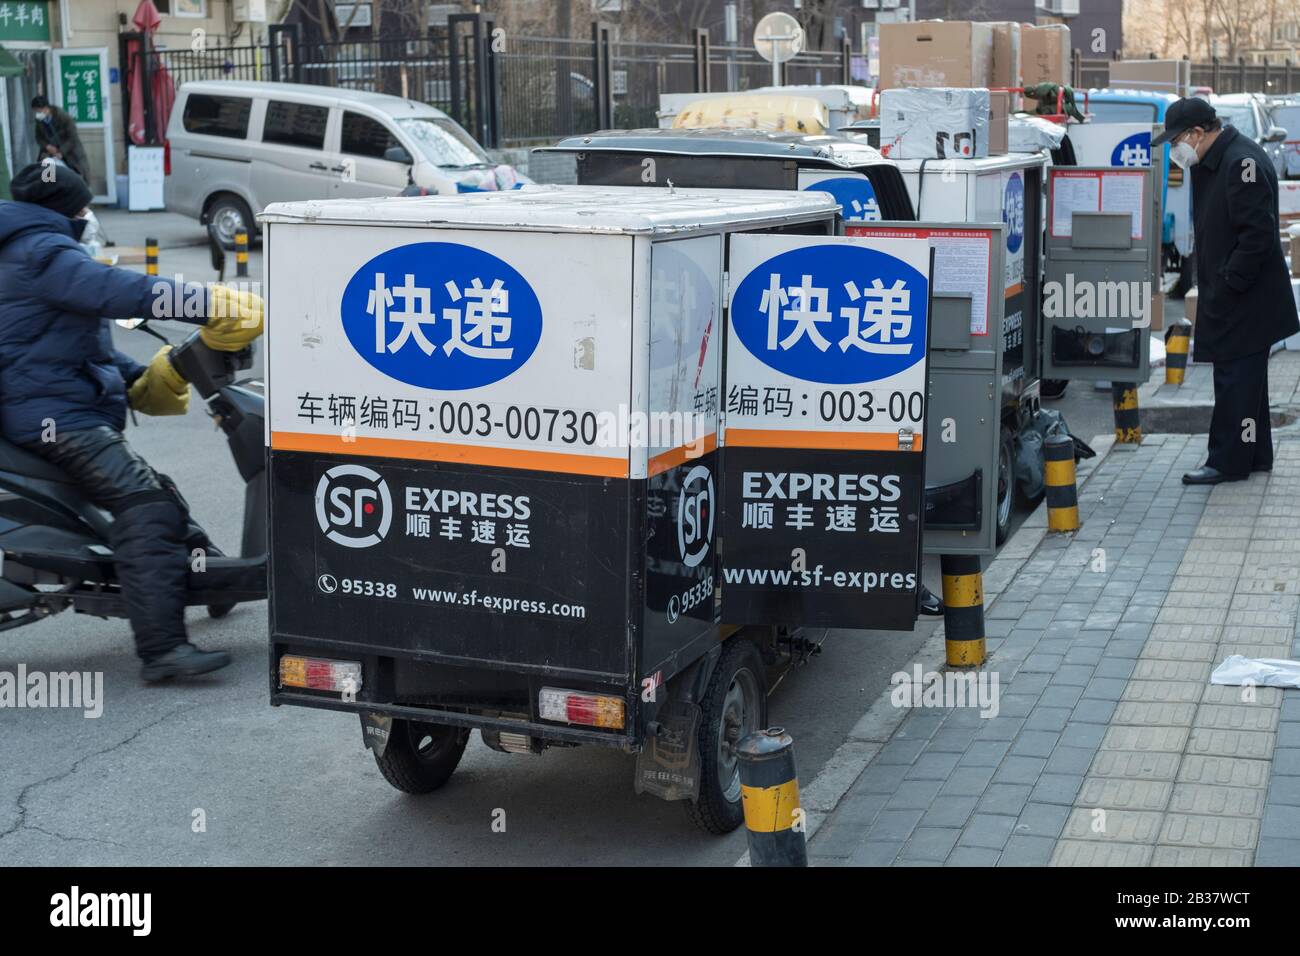 Un punto di servizio espresso temporaneo al di fuori di un composto residenziale murato in mezzo allo scoppio di un nuovo coronavirus a Pechino, Cina. 04-Mar-202 Foto Stock